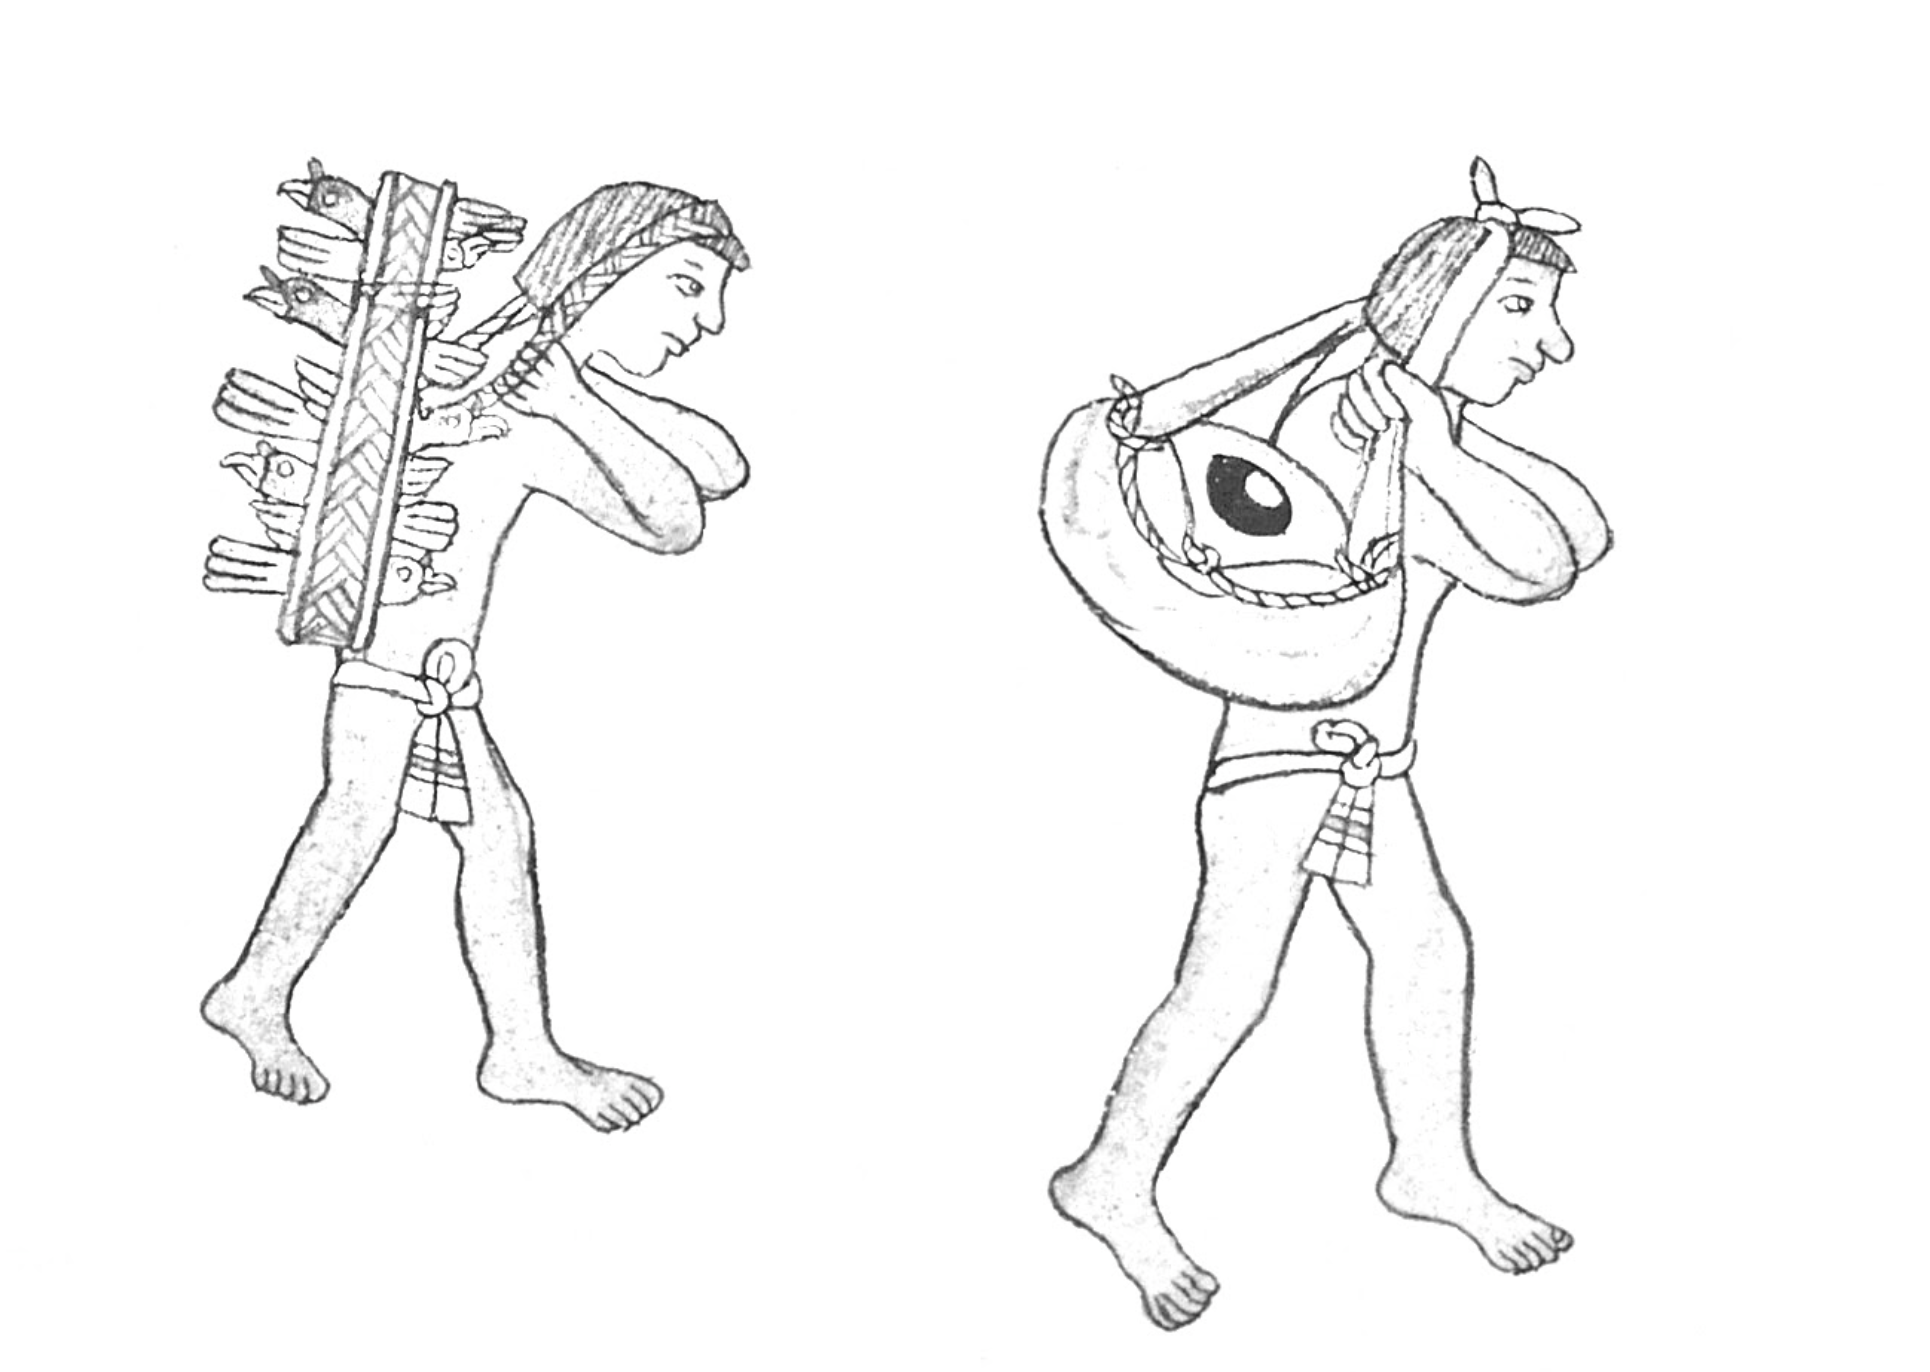 1. Tamemes con cacaxtli y petlacalli, respectivamente. Dibujo elaborado por Iván Rivero Hernández con base en el Códice de Tepetlaoztoc, f. 12-v (detalle).